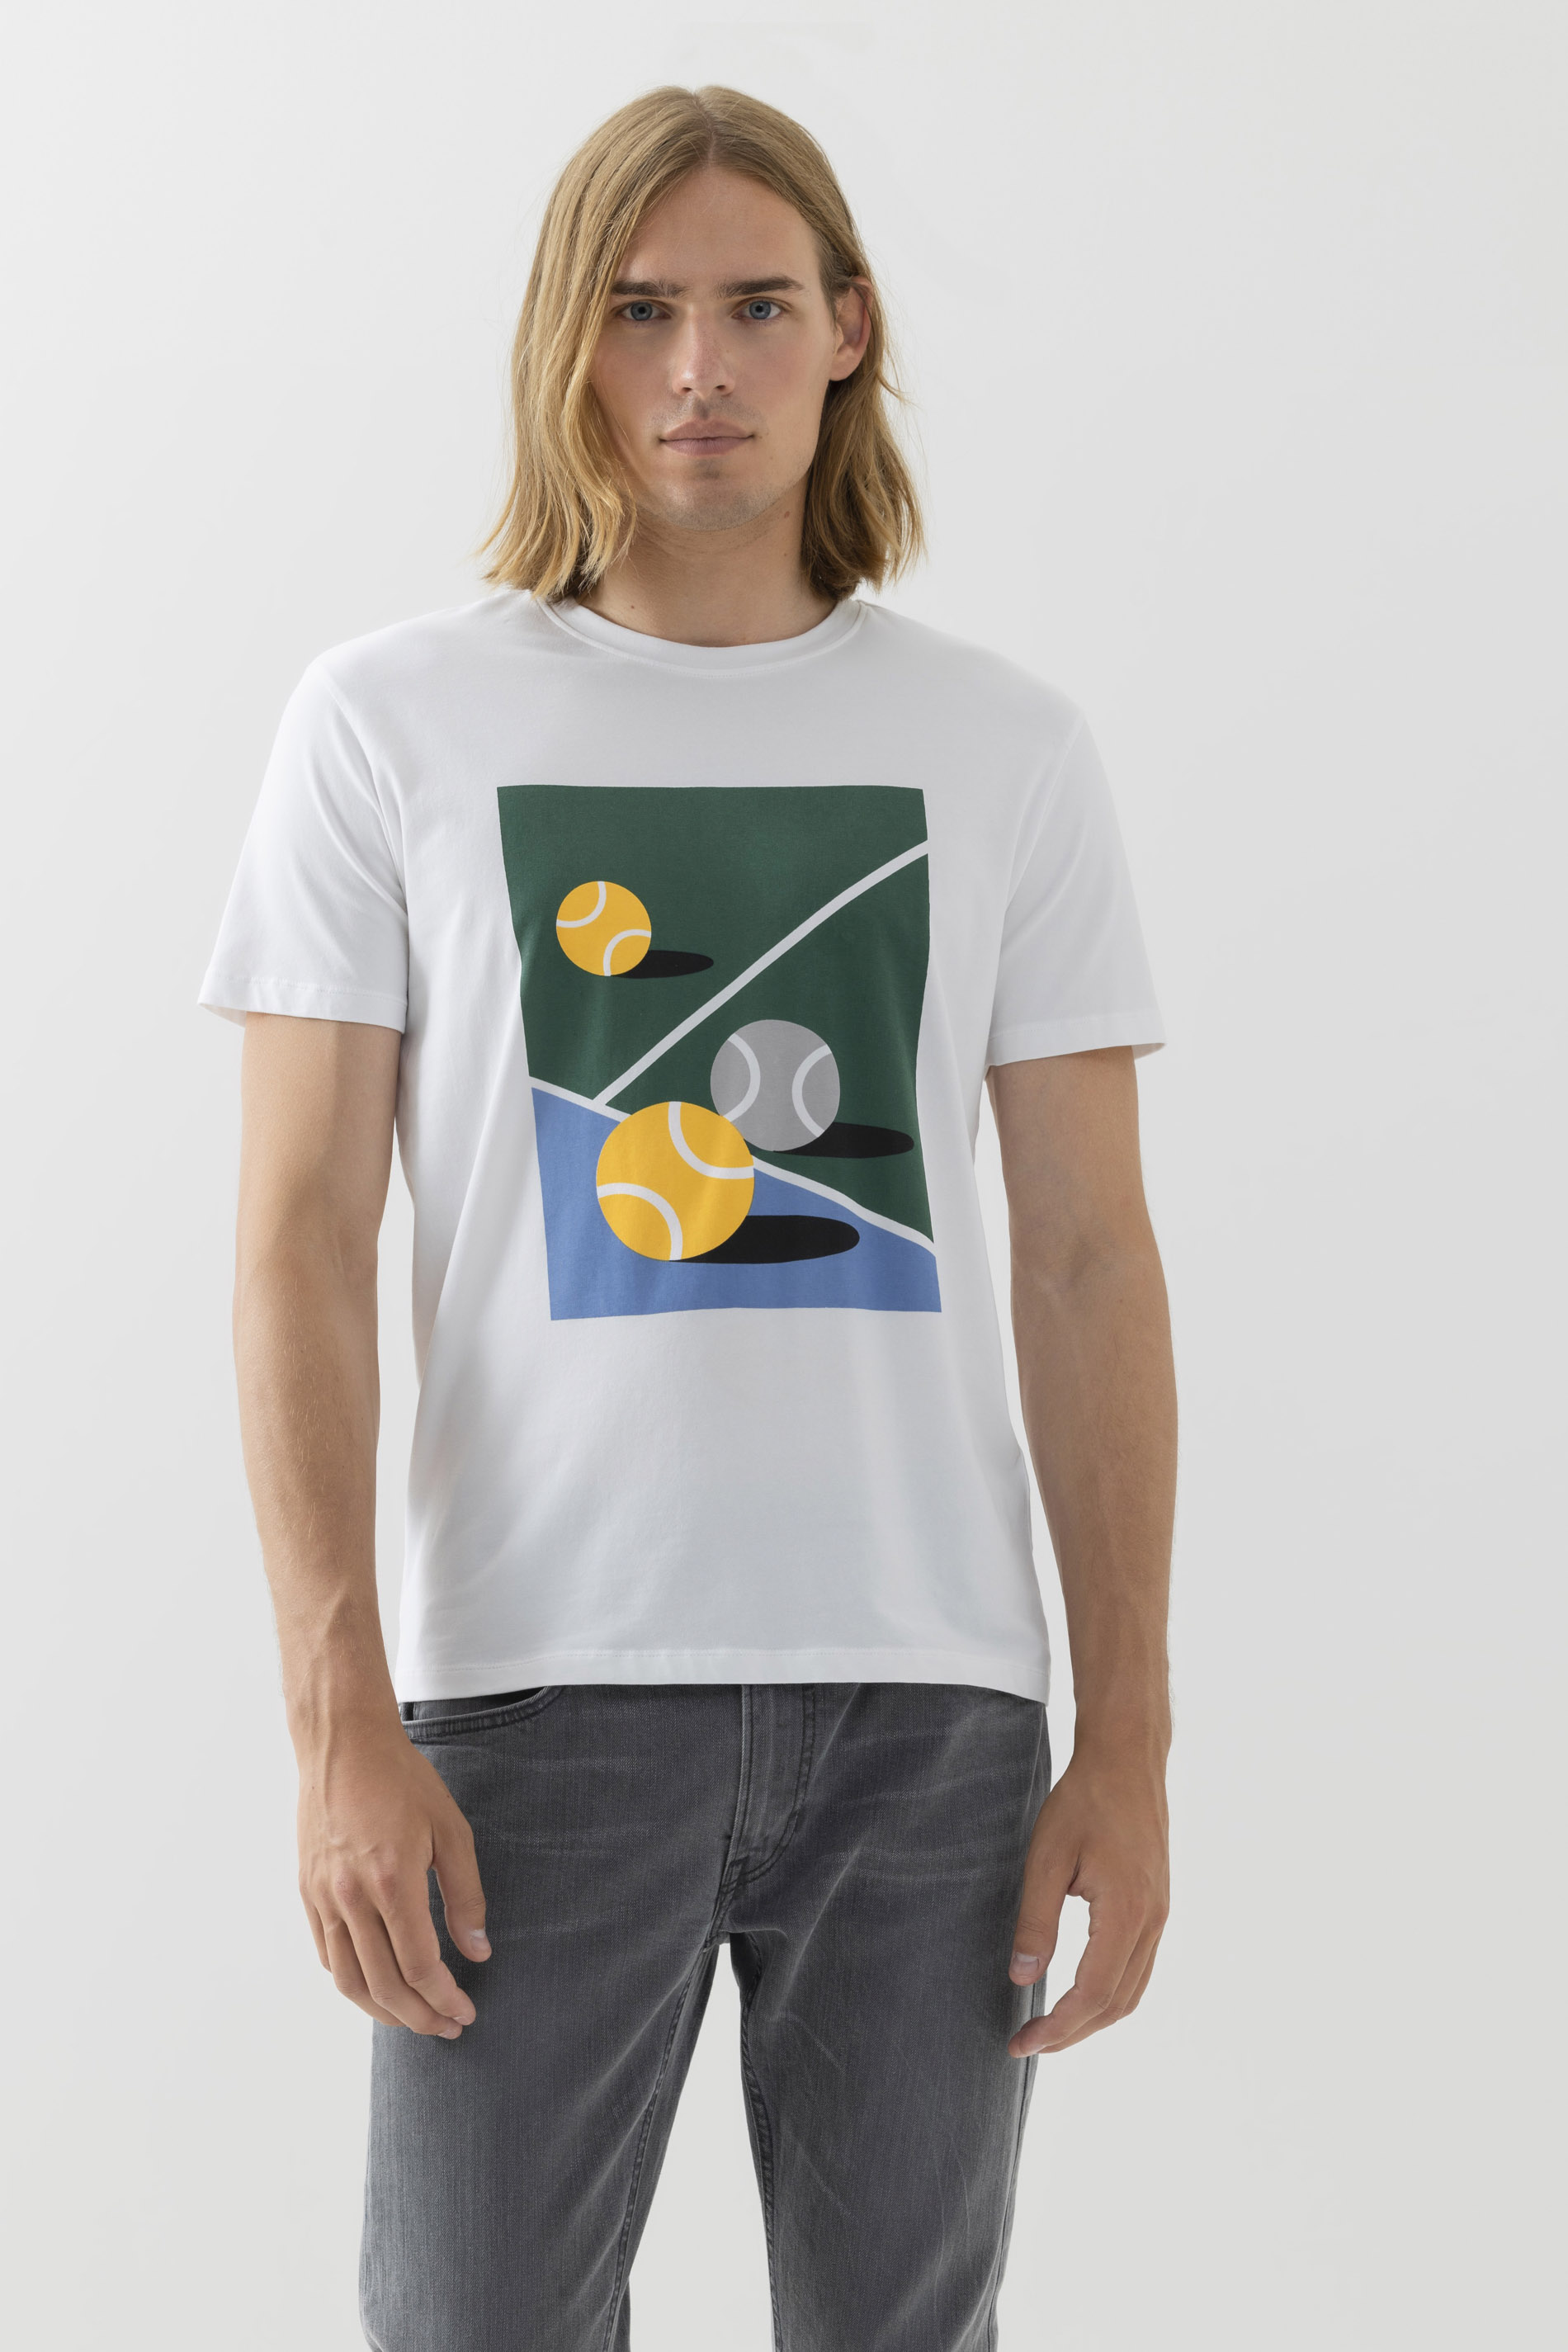 T-shirt Serie Tennis Vooraanzicht | mey®